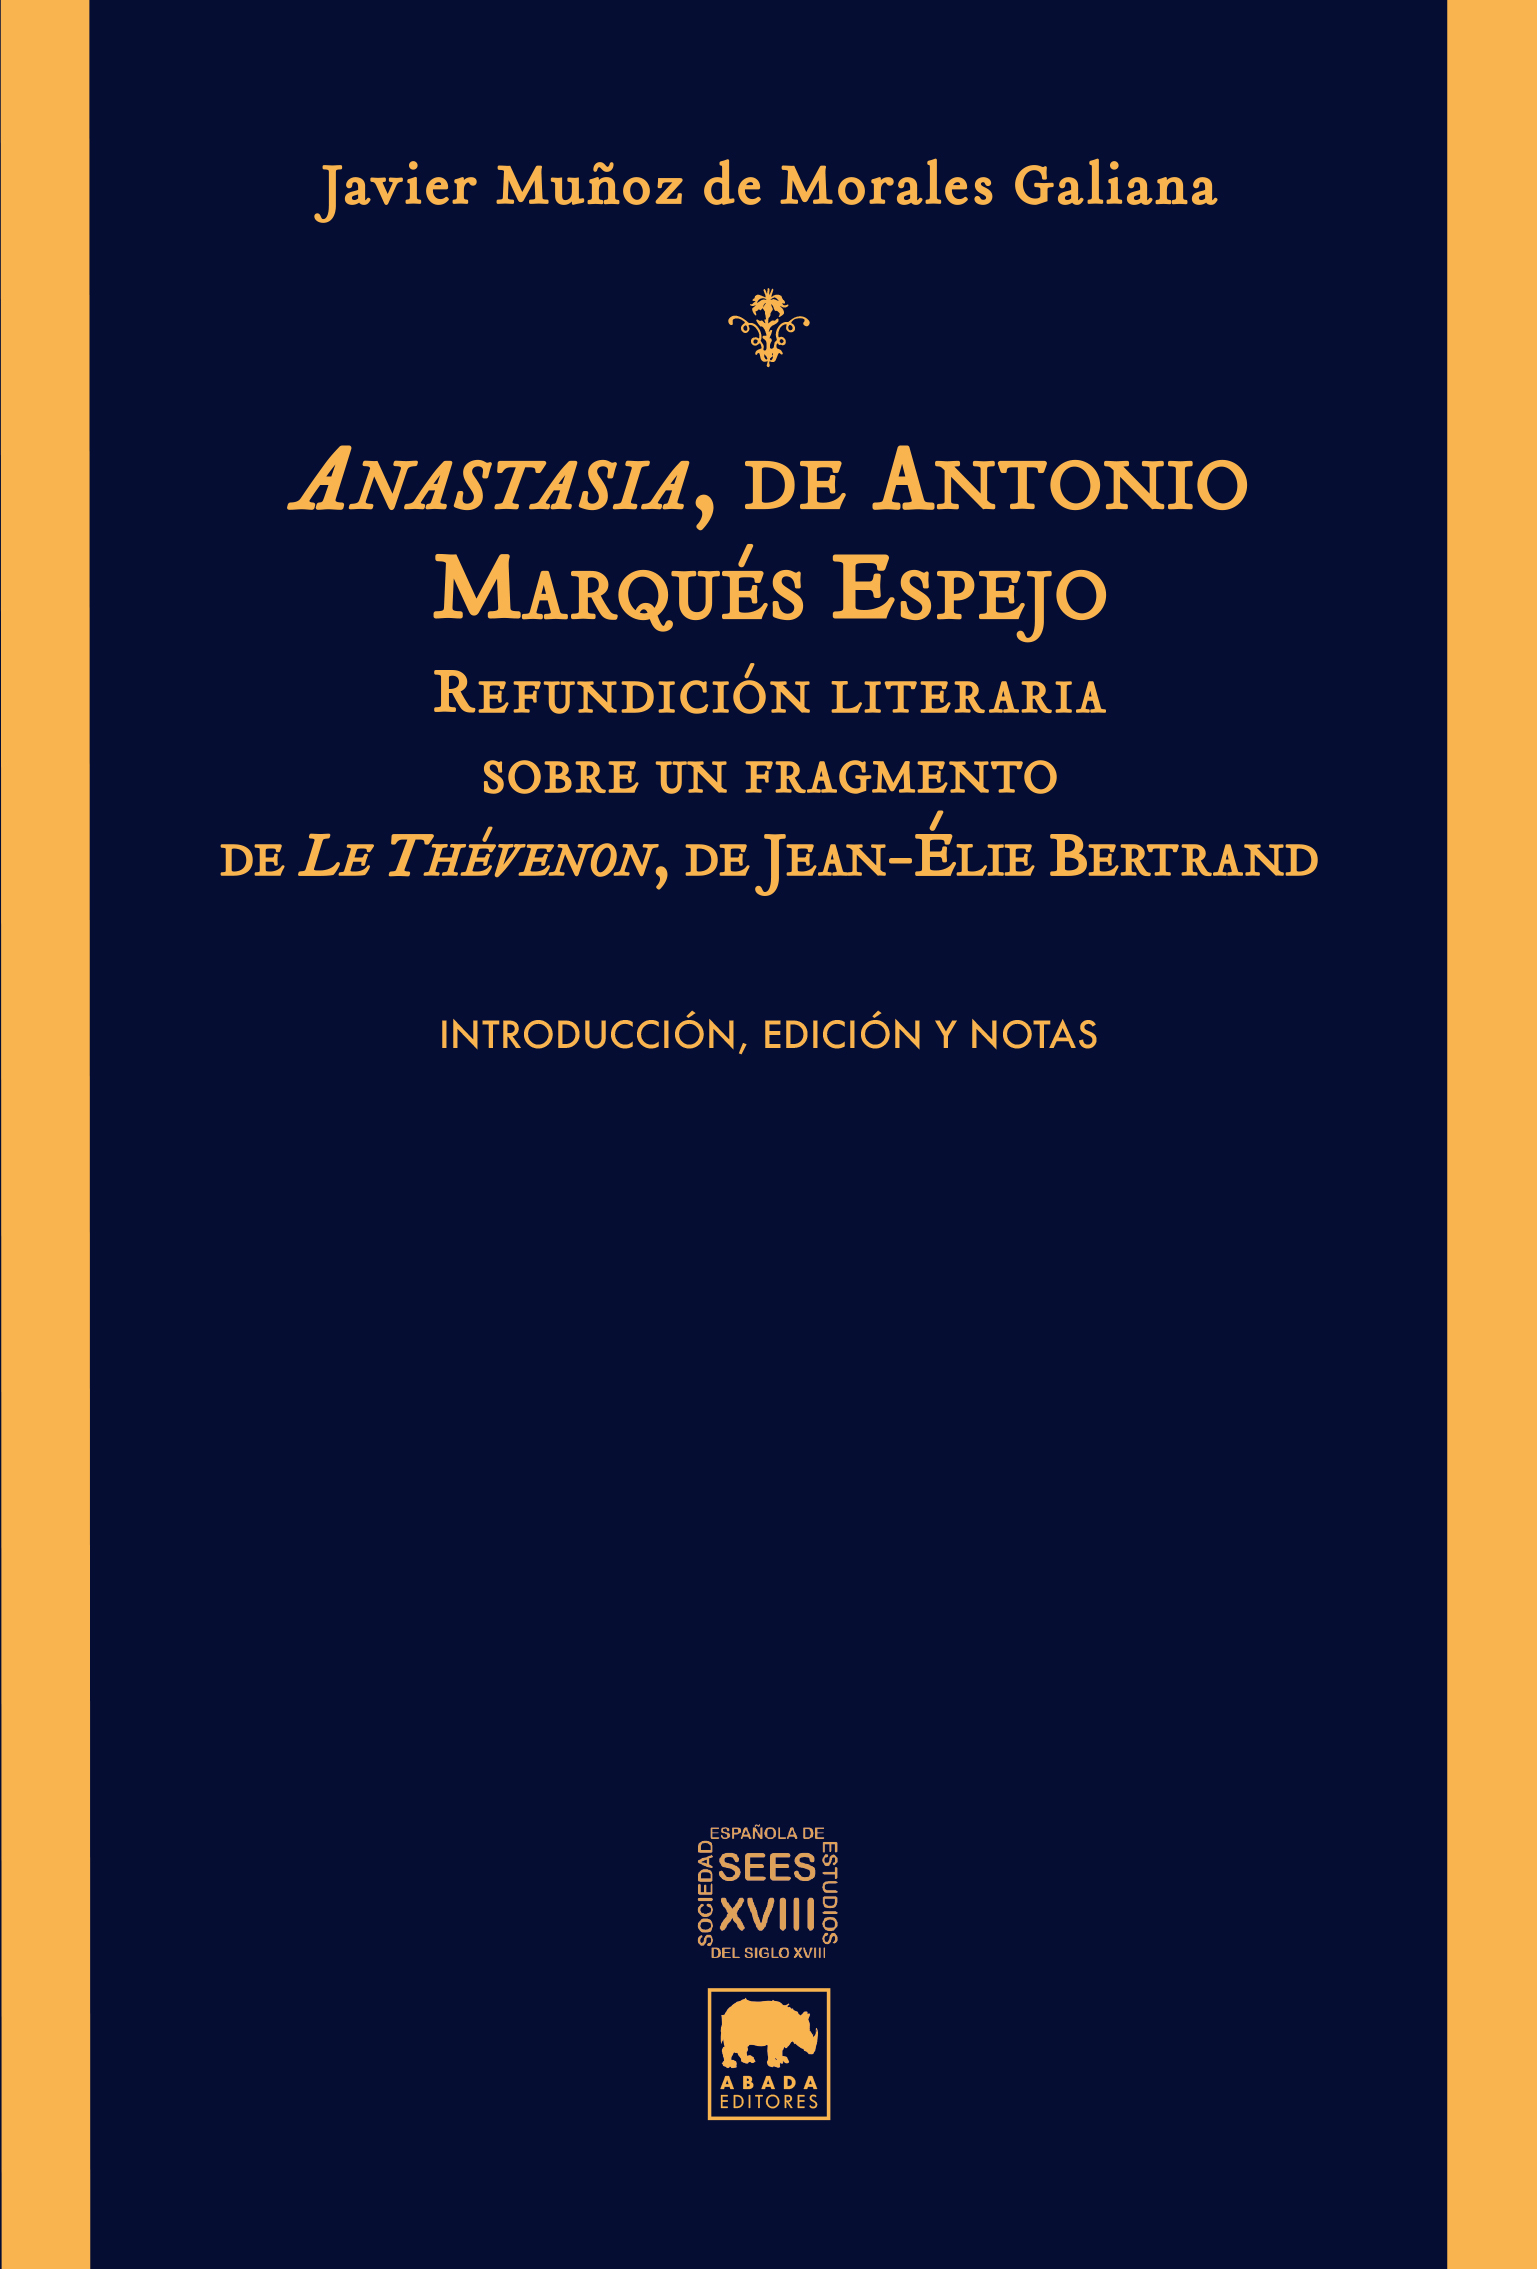 Anastasia, de Antonio Marqués de Espejo